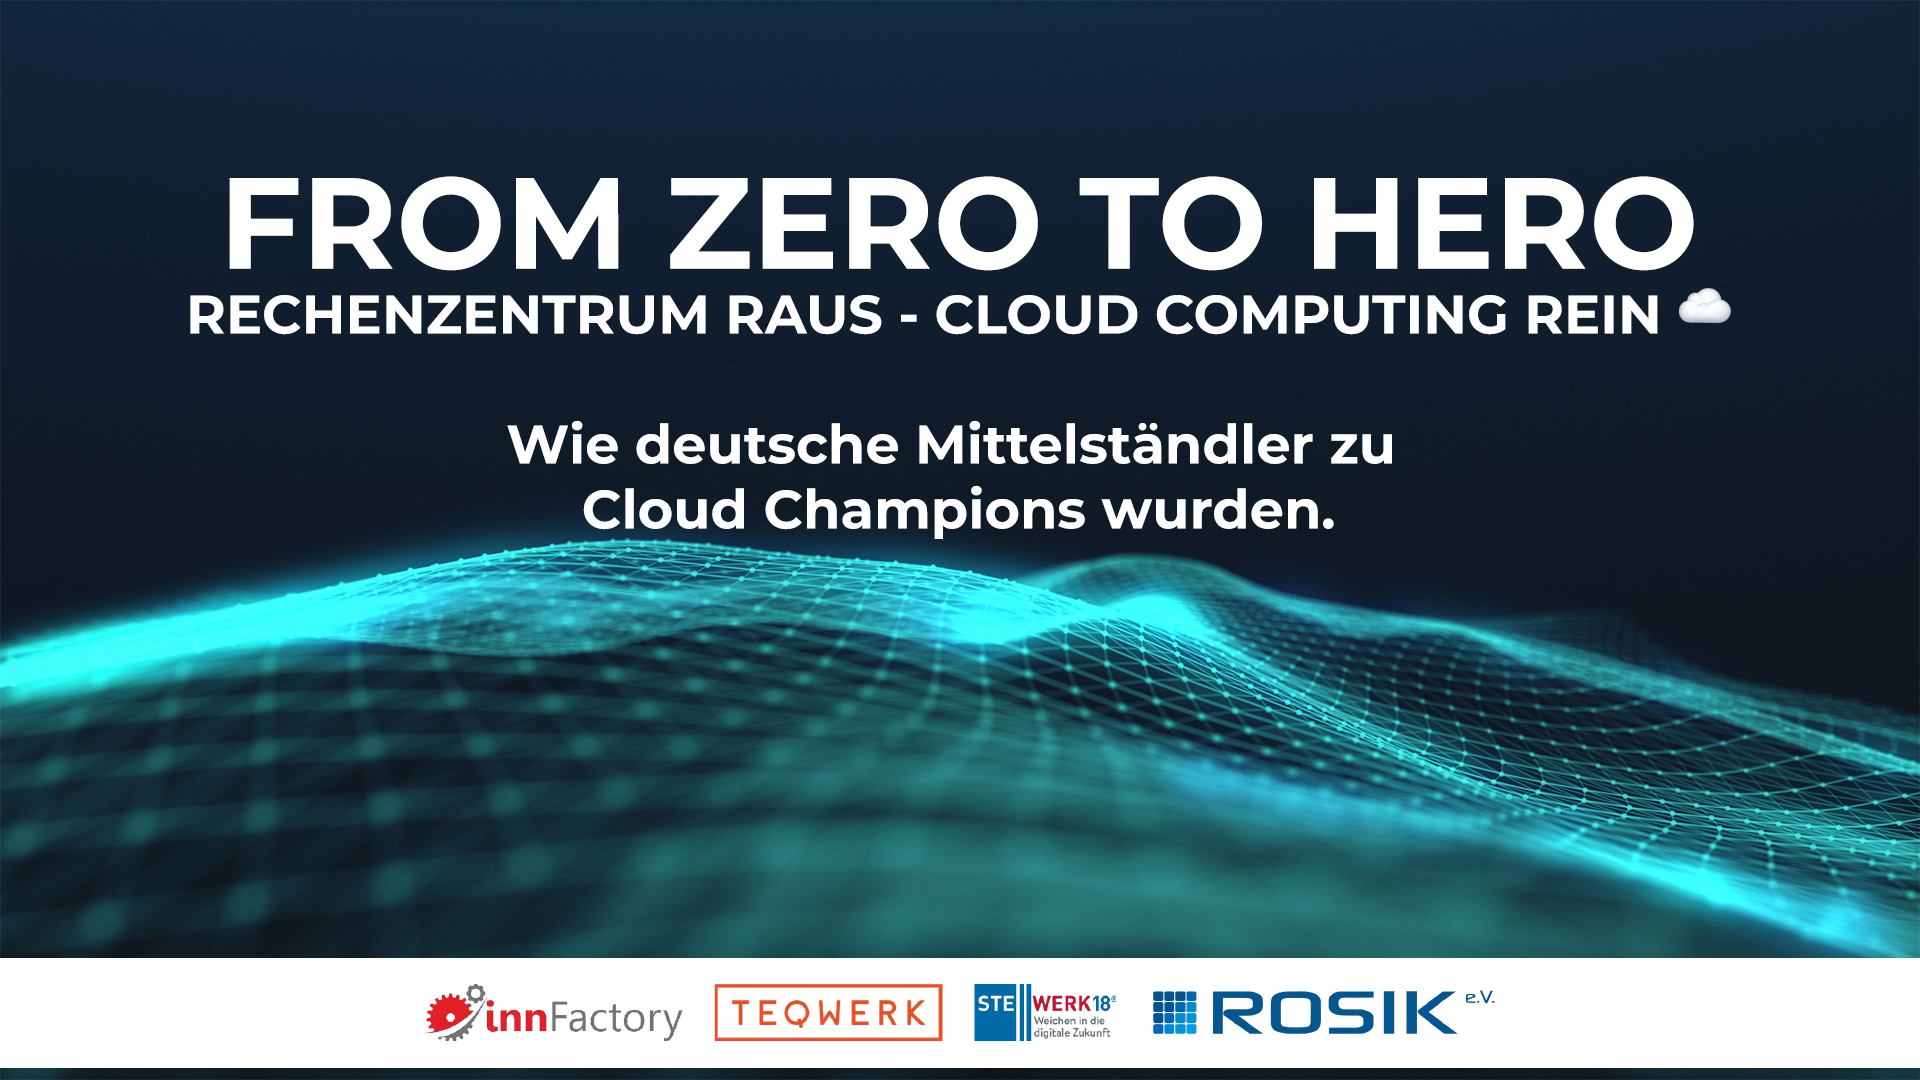 from zero to hero linkedin - FROM ZERO TO HERO - Rechenzentrum raus, Cloud Computing rein.